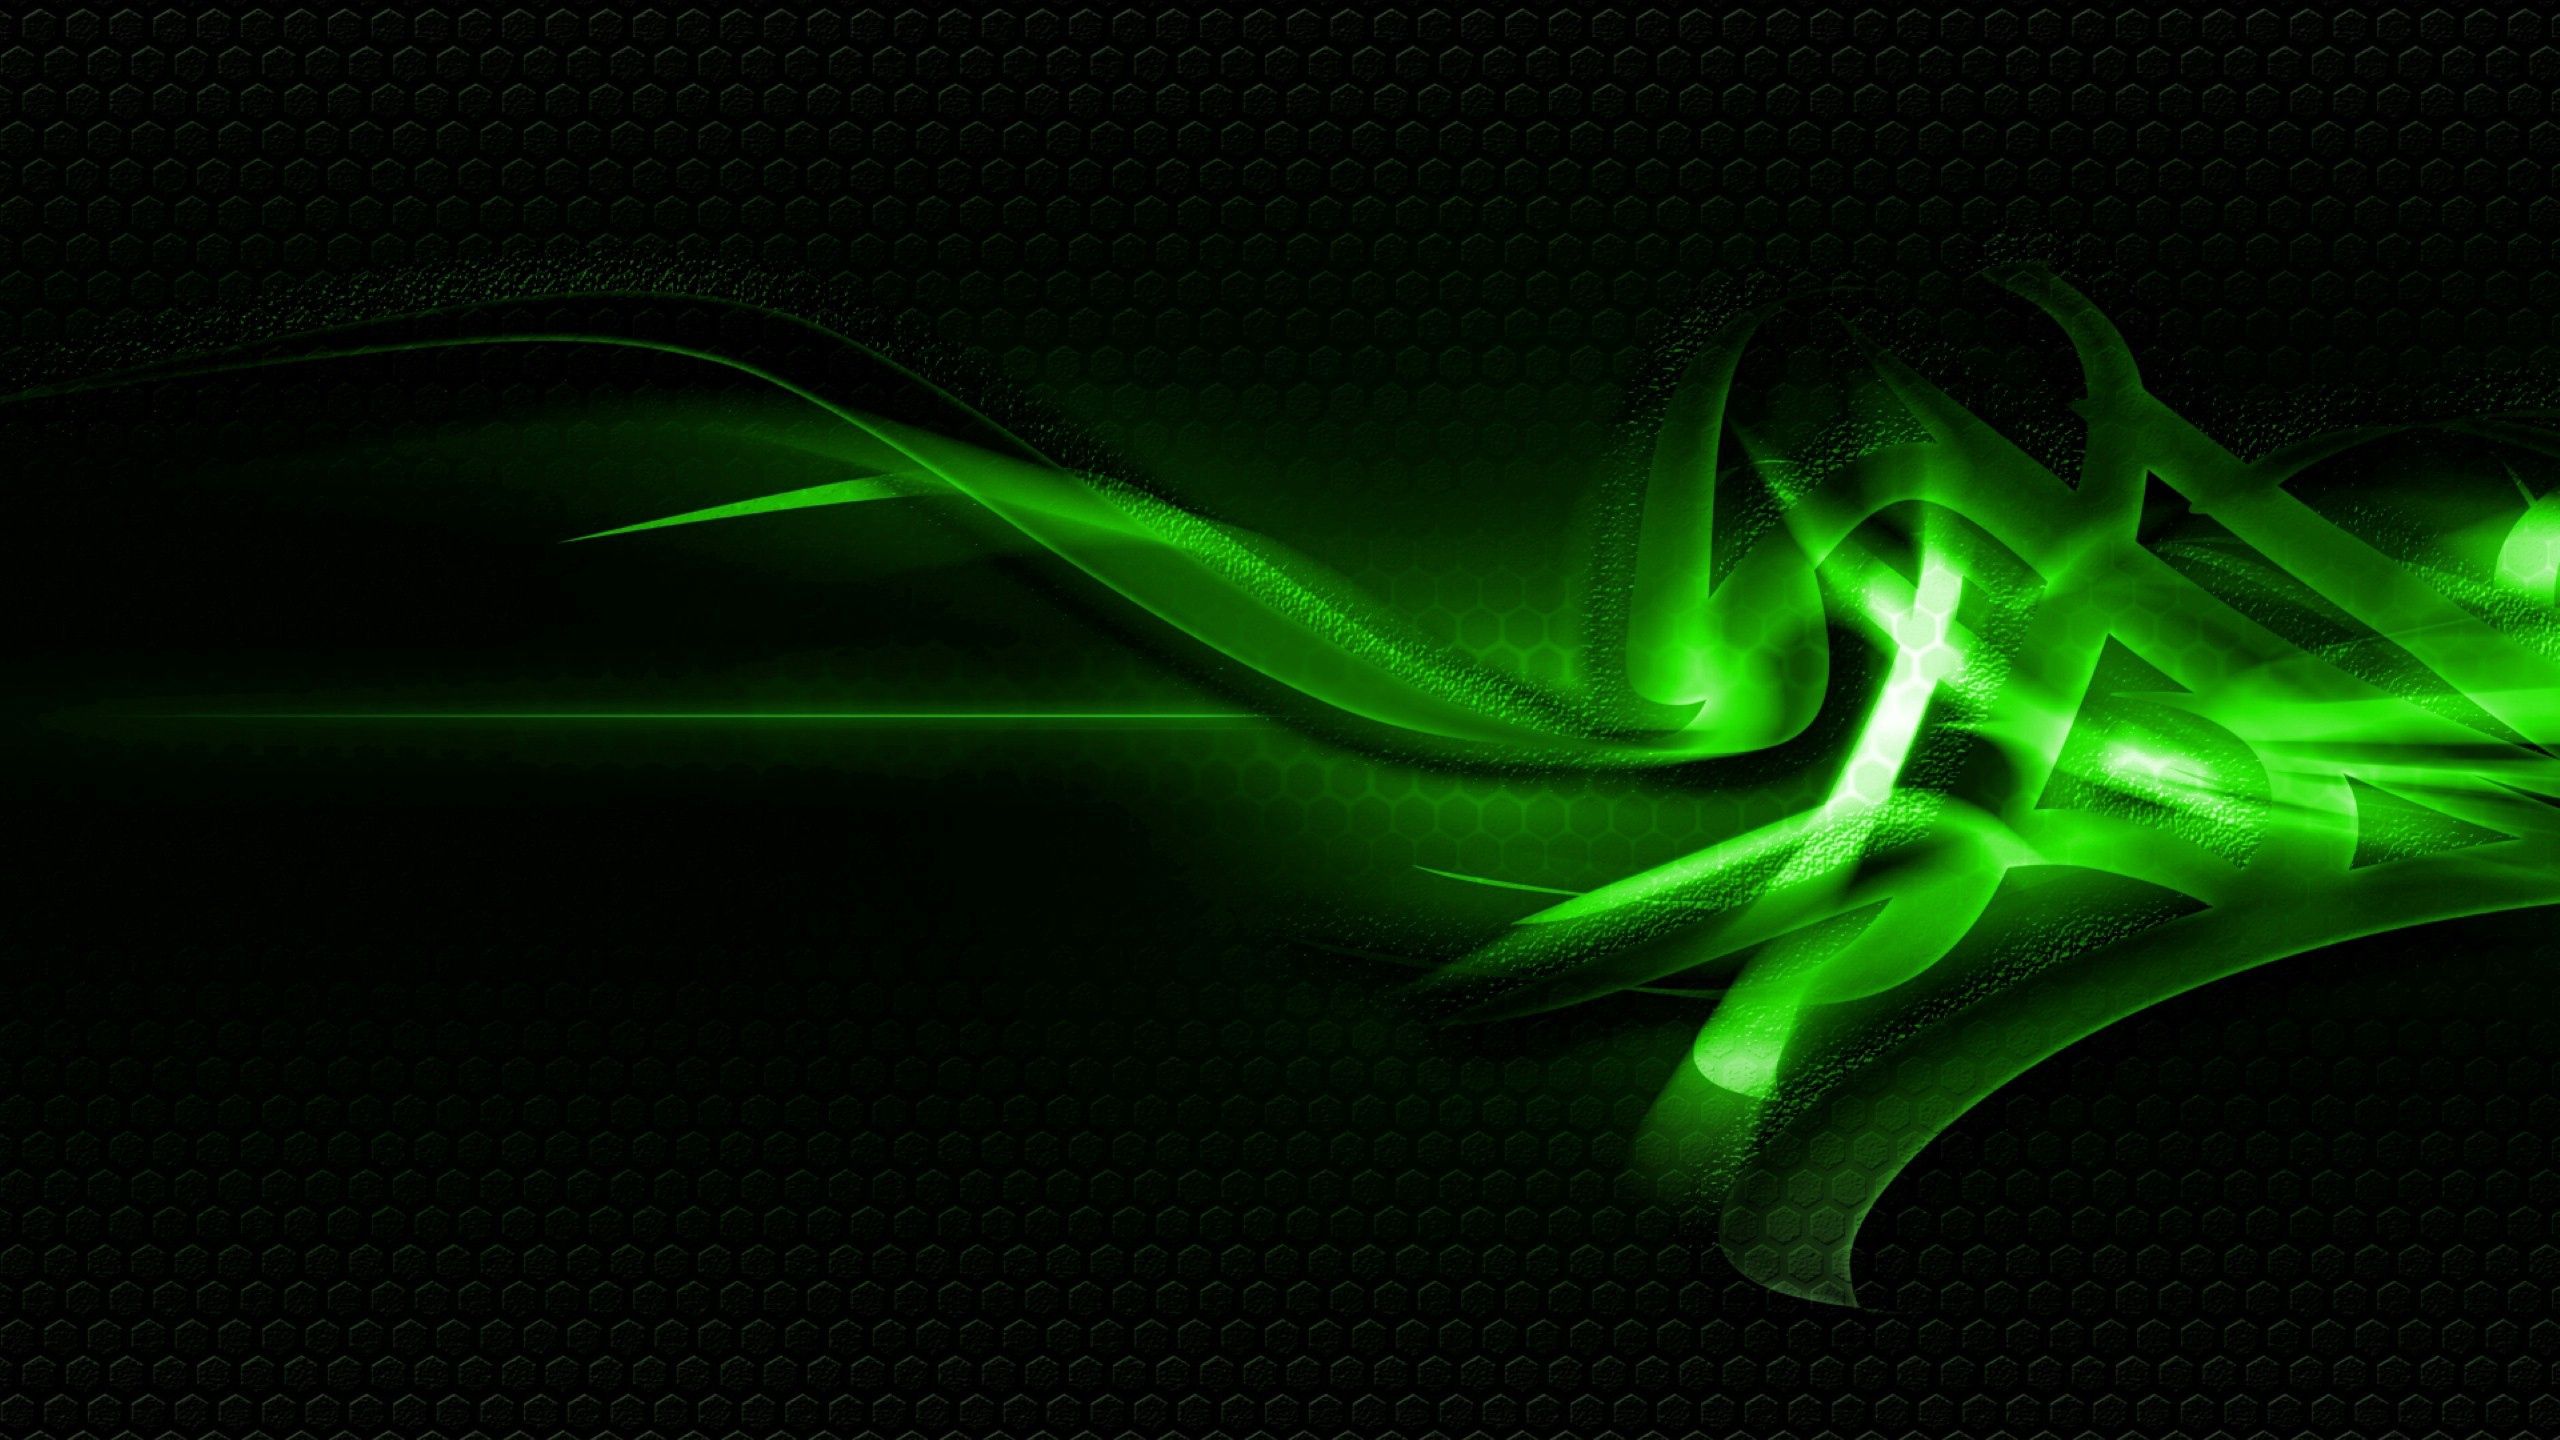 Download wallpaper 2560x1440 patterns, green, light, dark widescreen 16:9  hd background